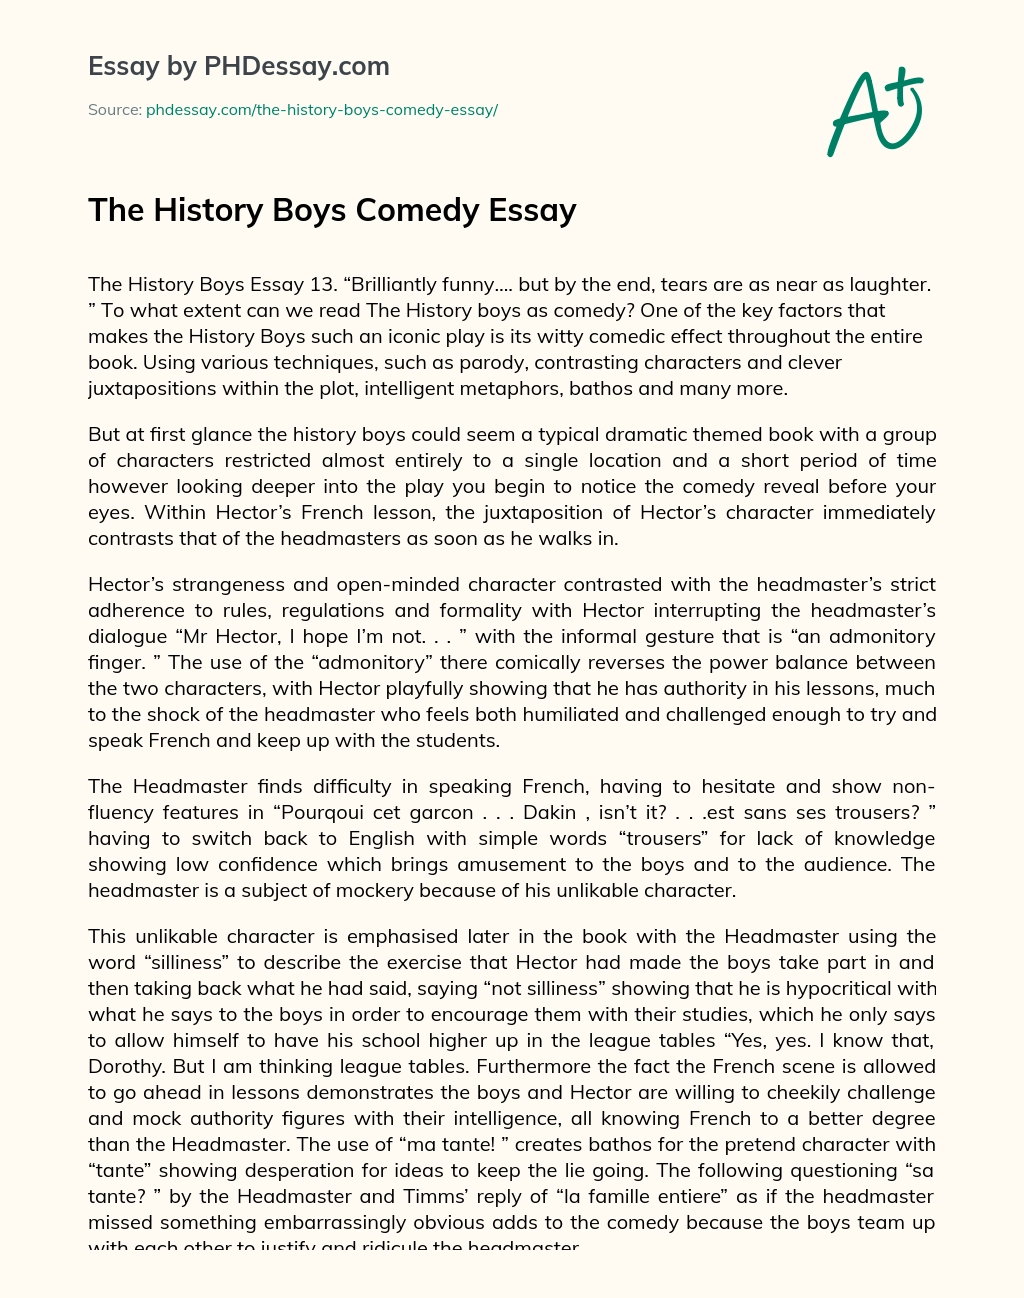 The History Boys Comedy Essay essay